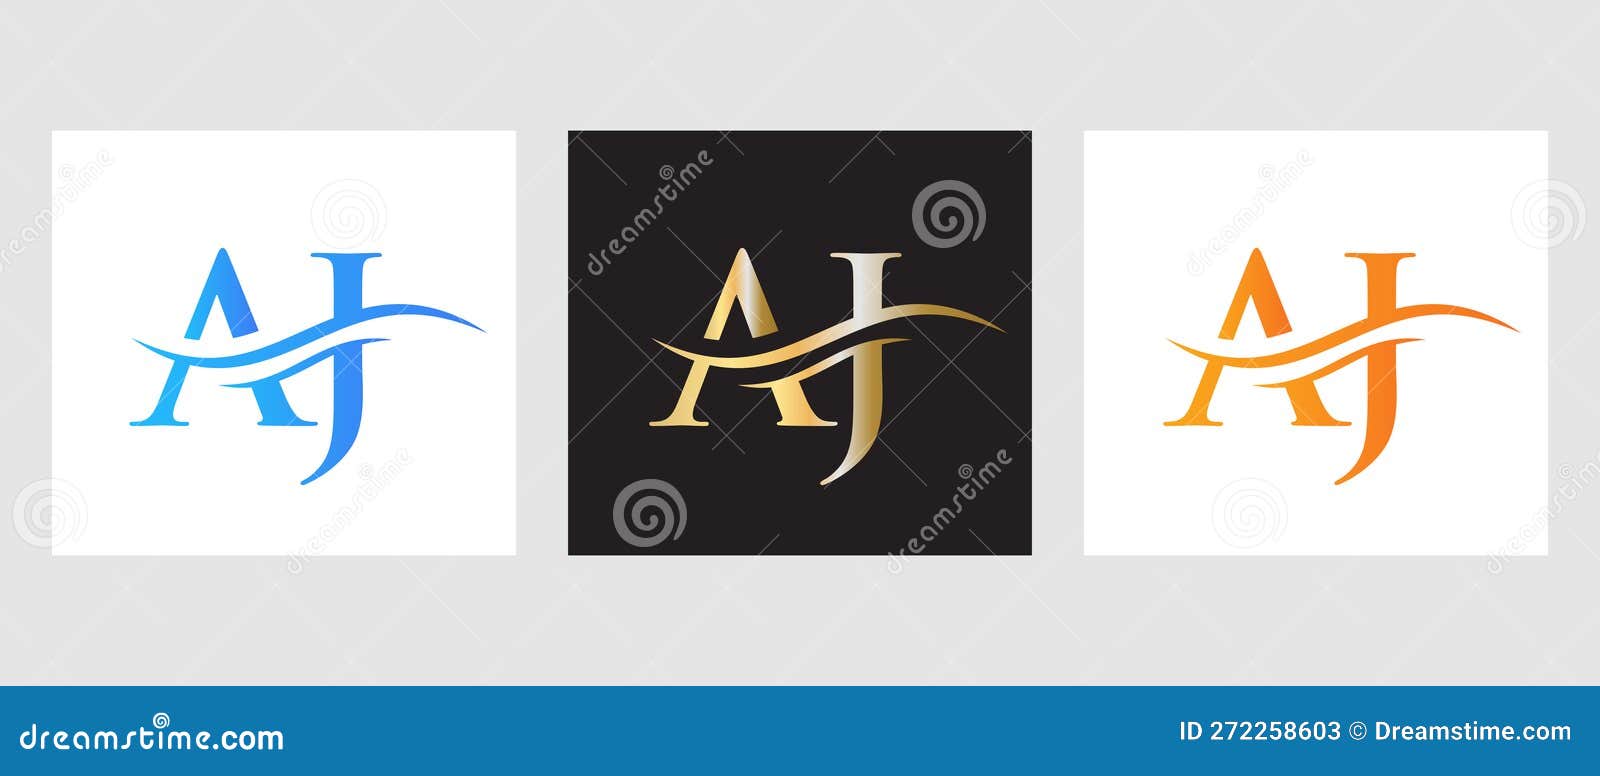 Aj monograma logotipo design letra texto nome símbolo logotipo